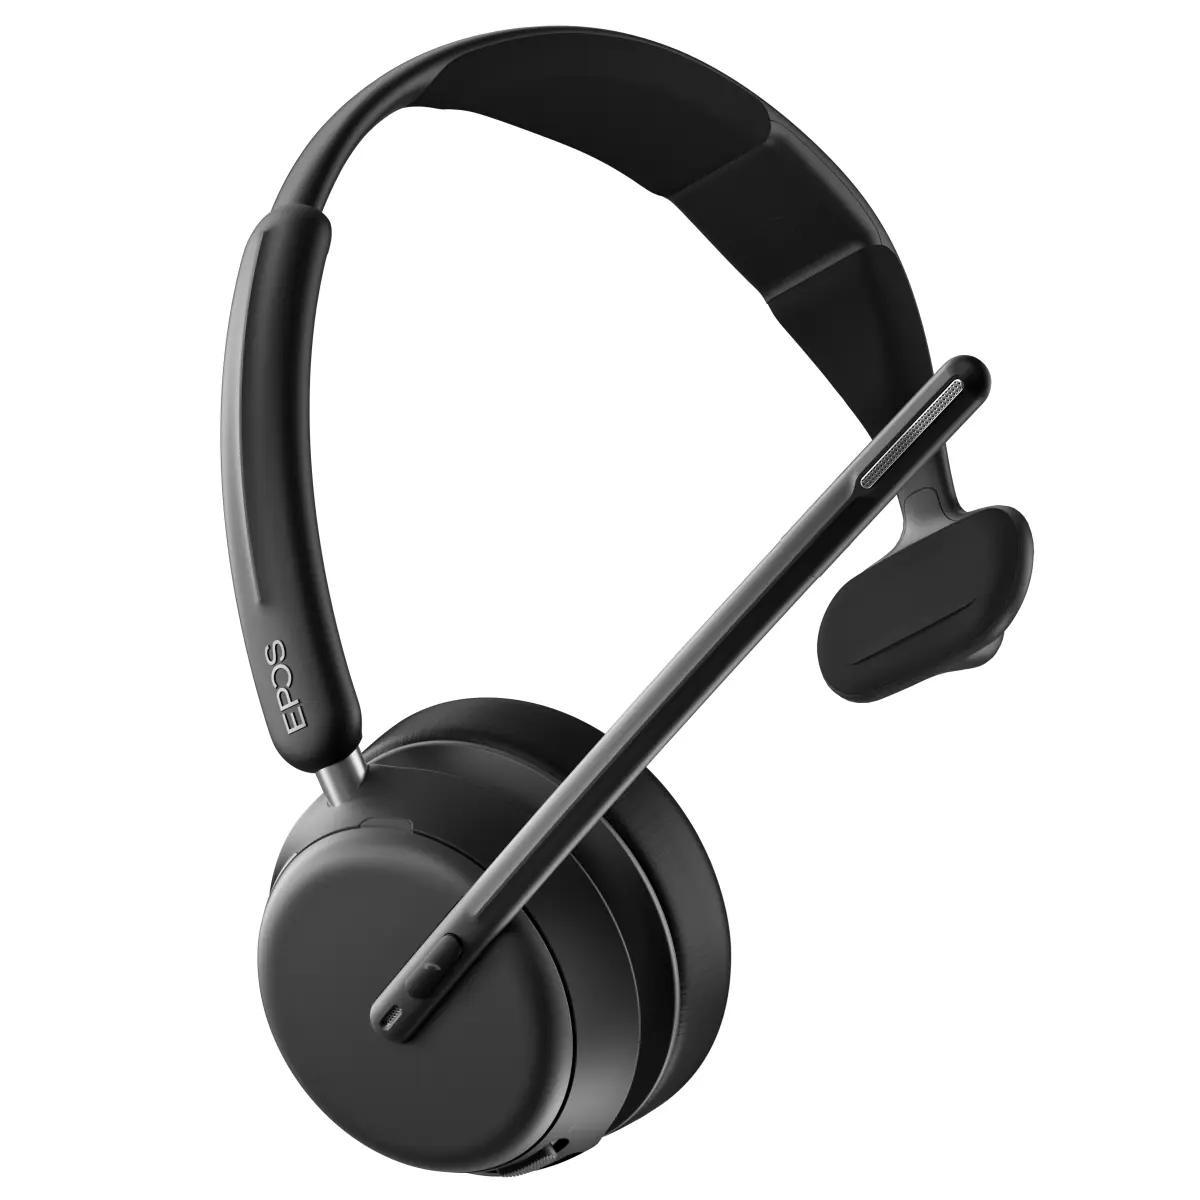 Bluetooth, dongle, usb : comparatif pour un casque audio